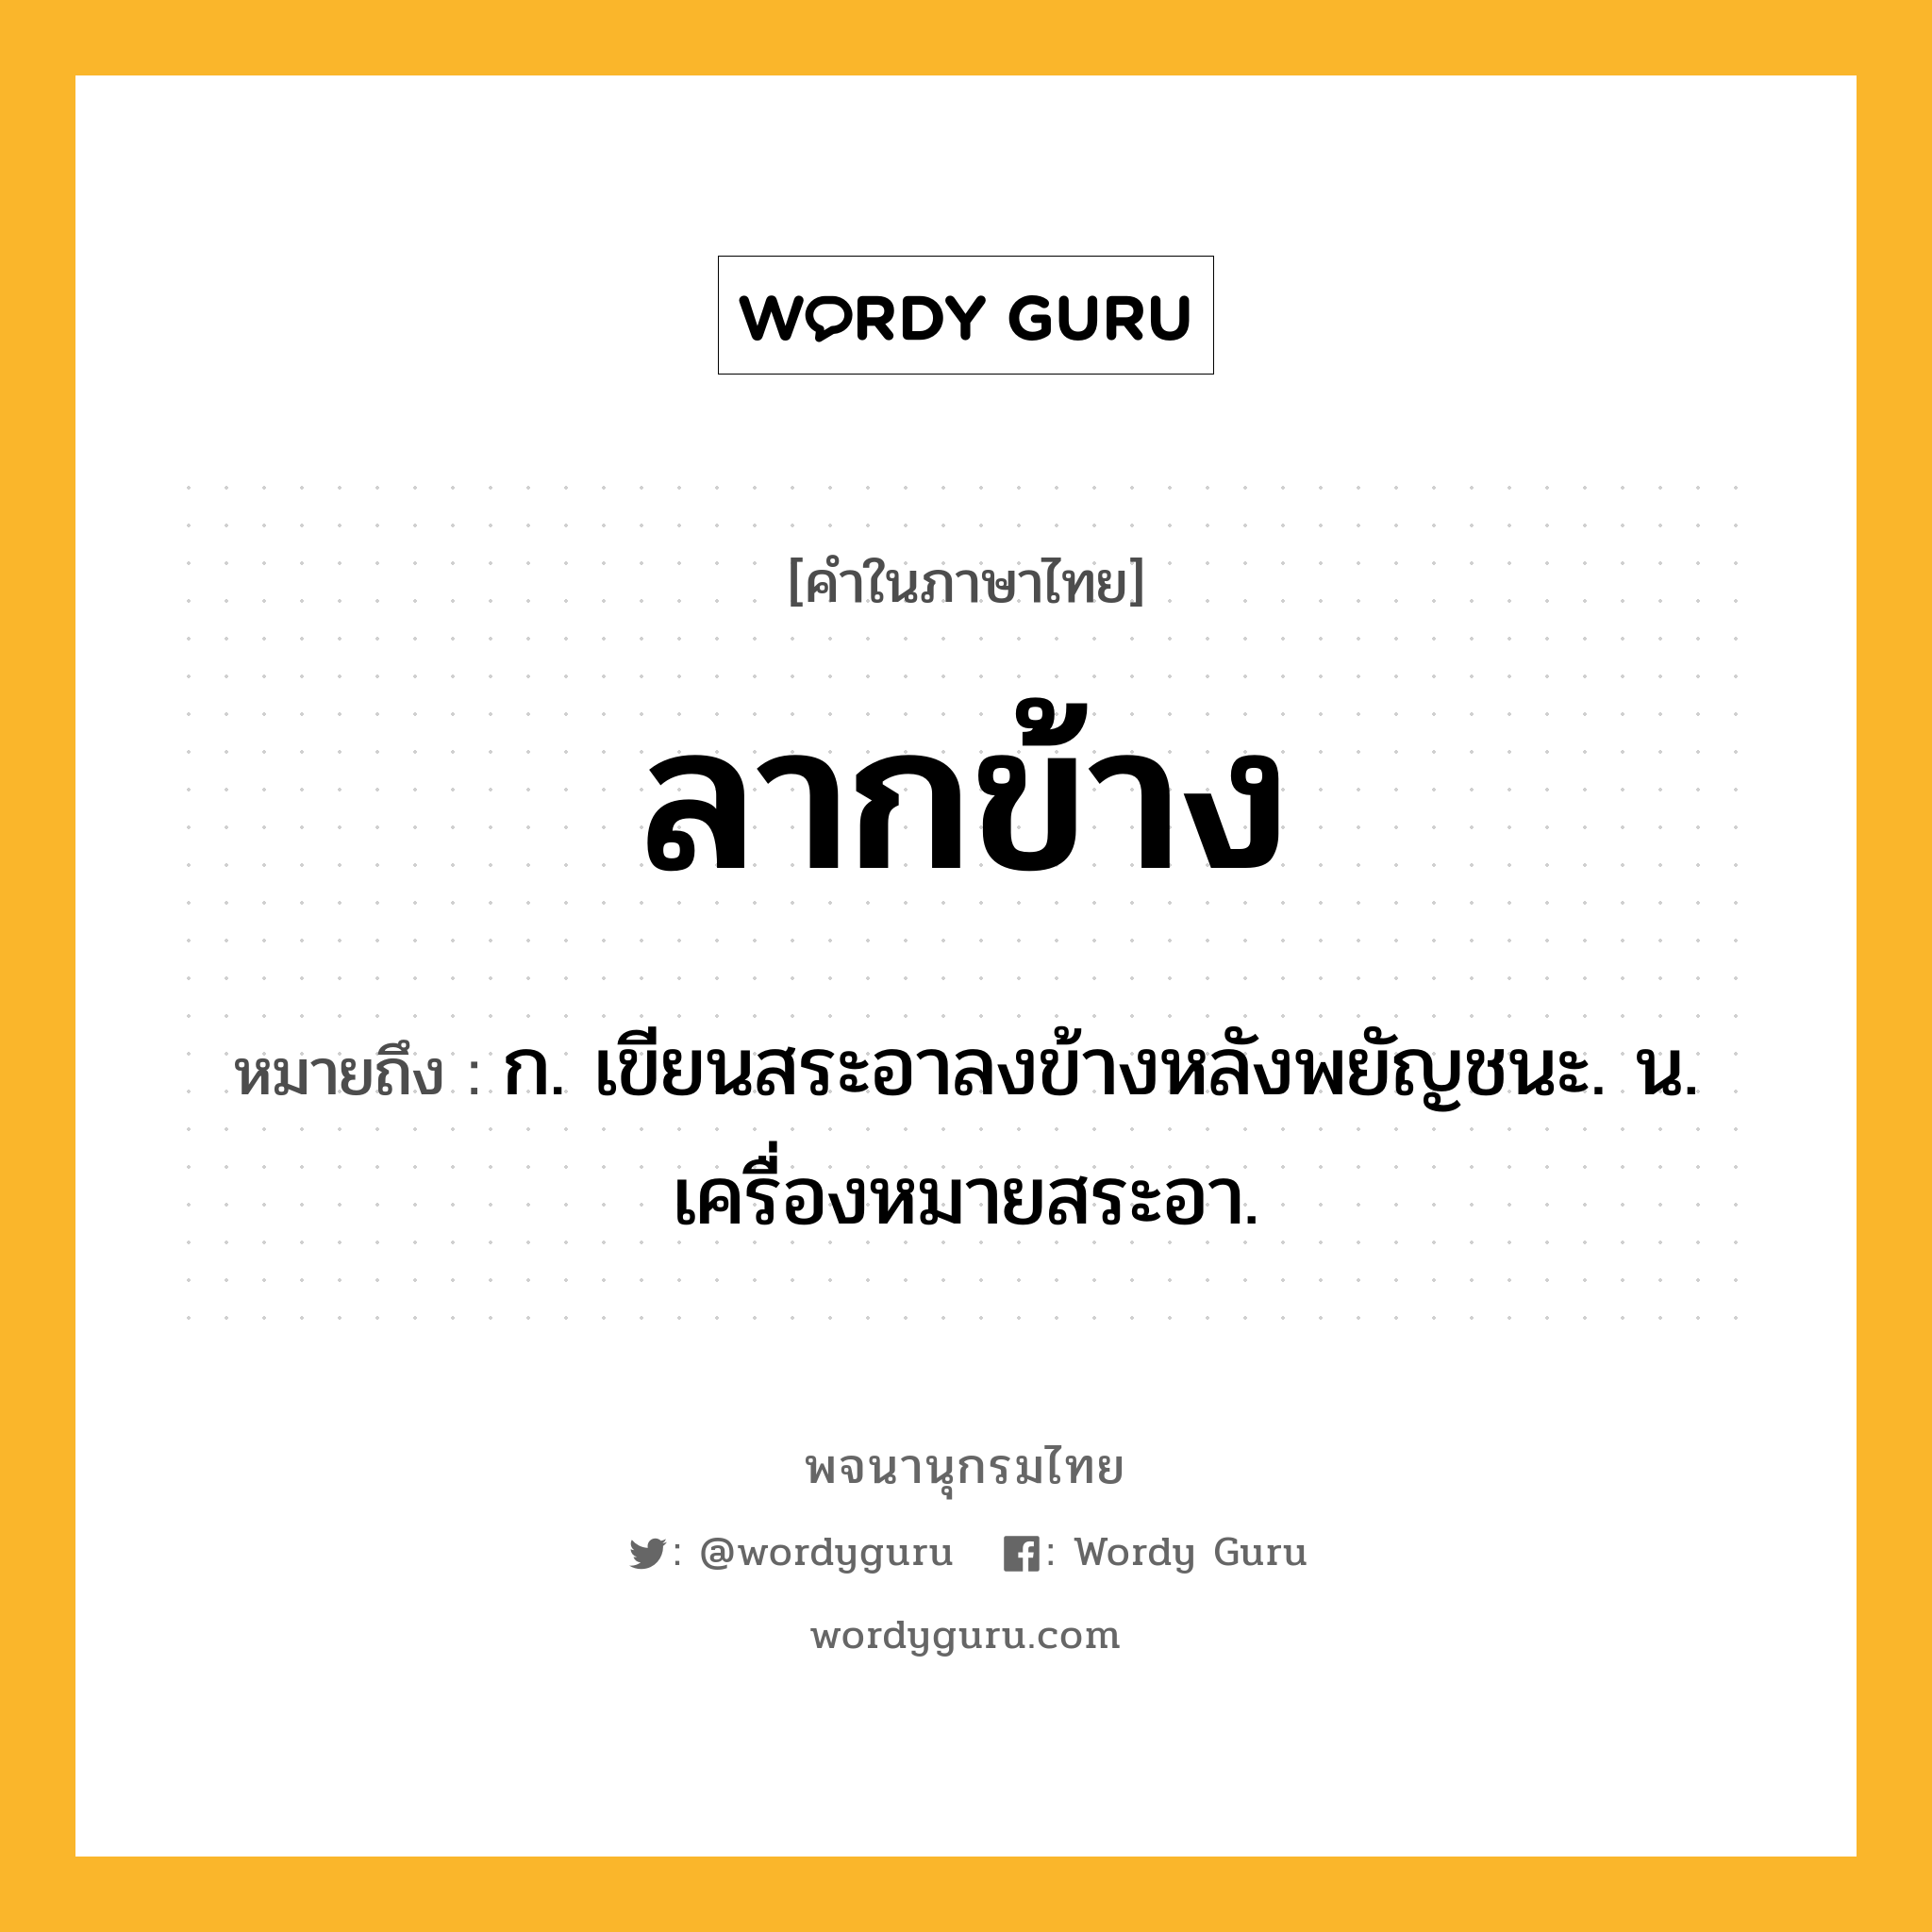 ลากข้าง หมายถึงอะไร?, คำในภาษาไทย ลากข้าง หมายถึง ก. เขียนสระอาลงข้างหลังพยัญชนะ. น. เครื่องหมายสระอา.